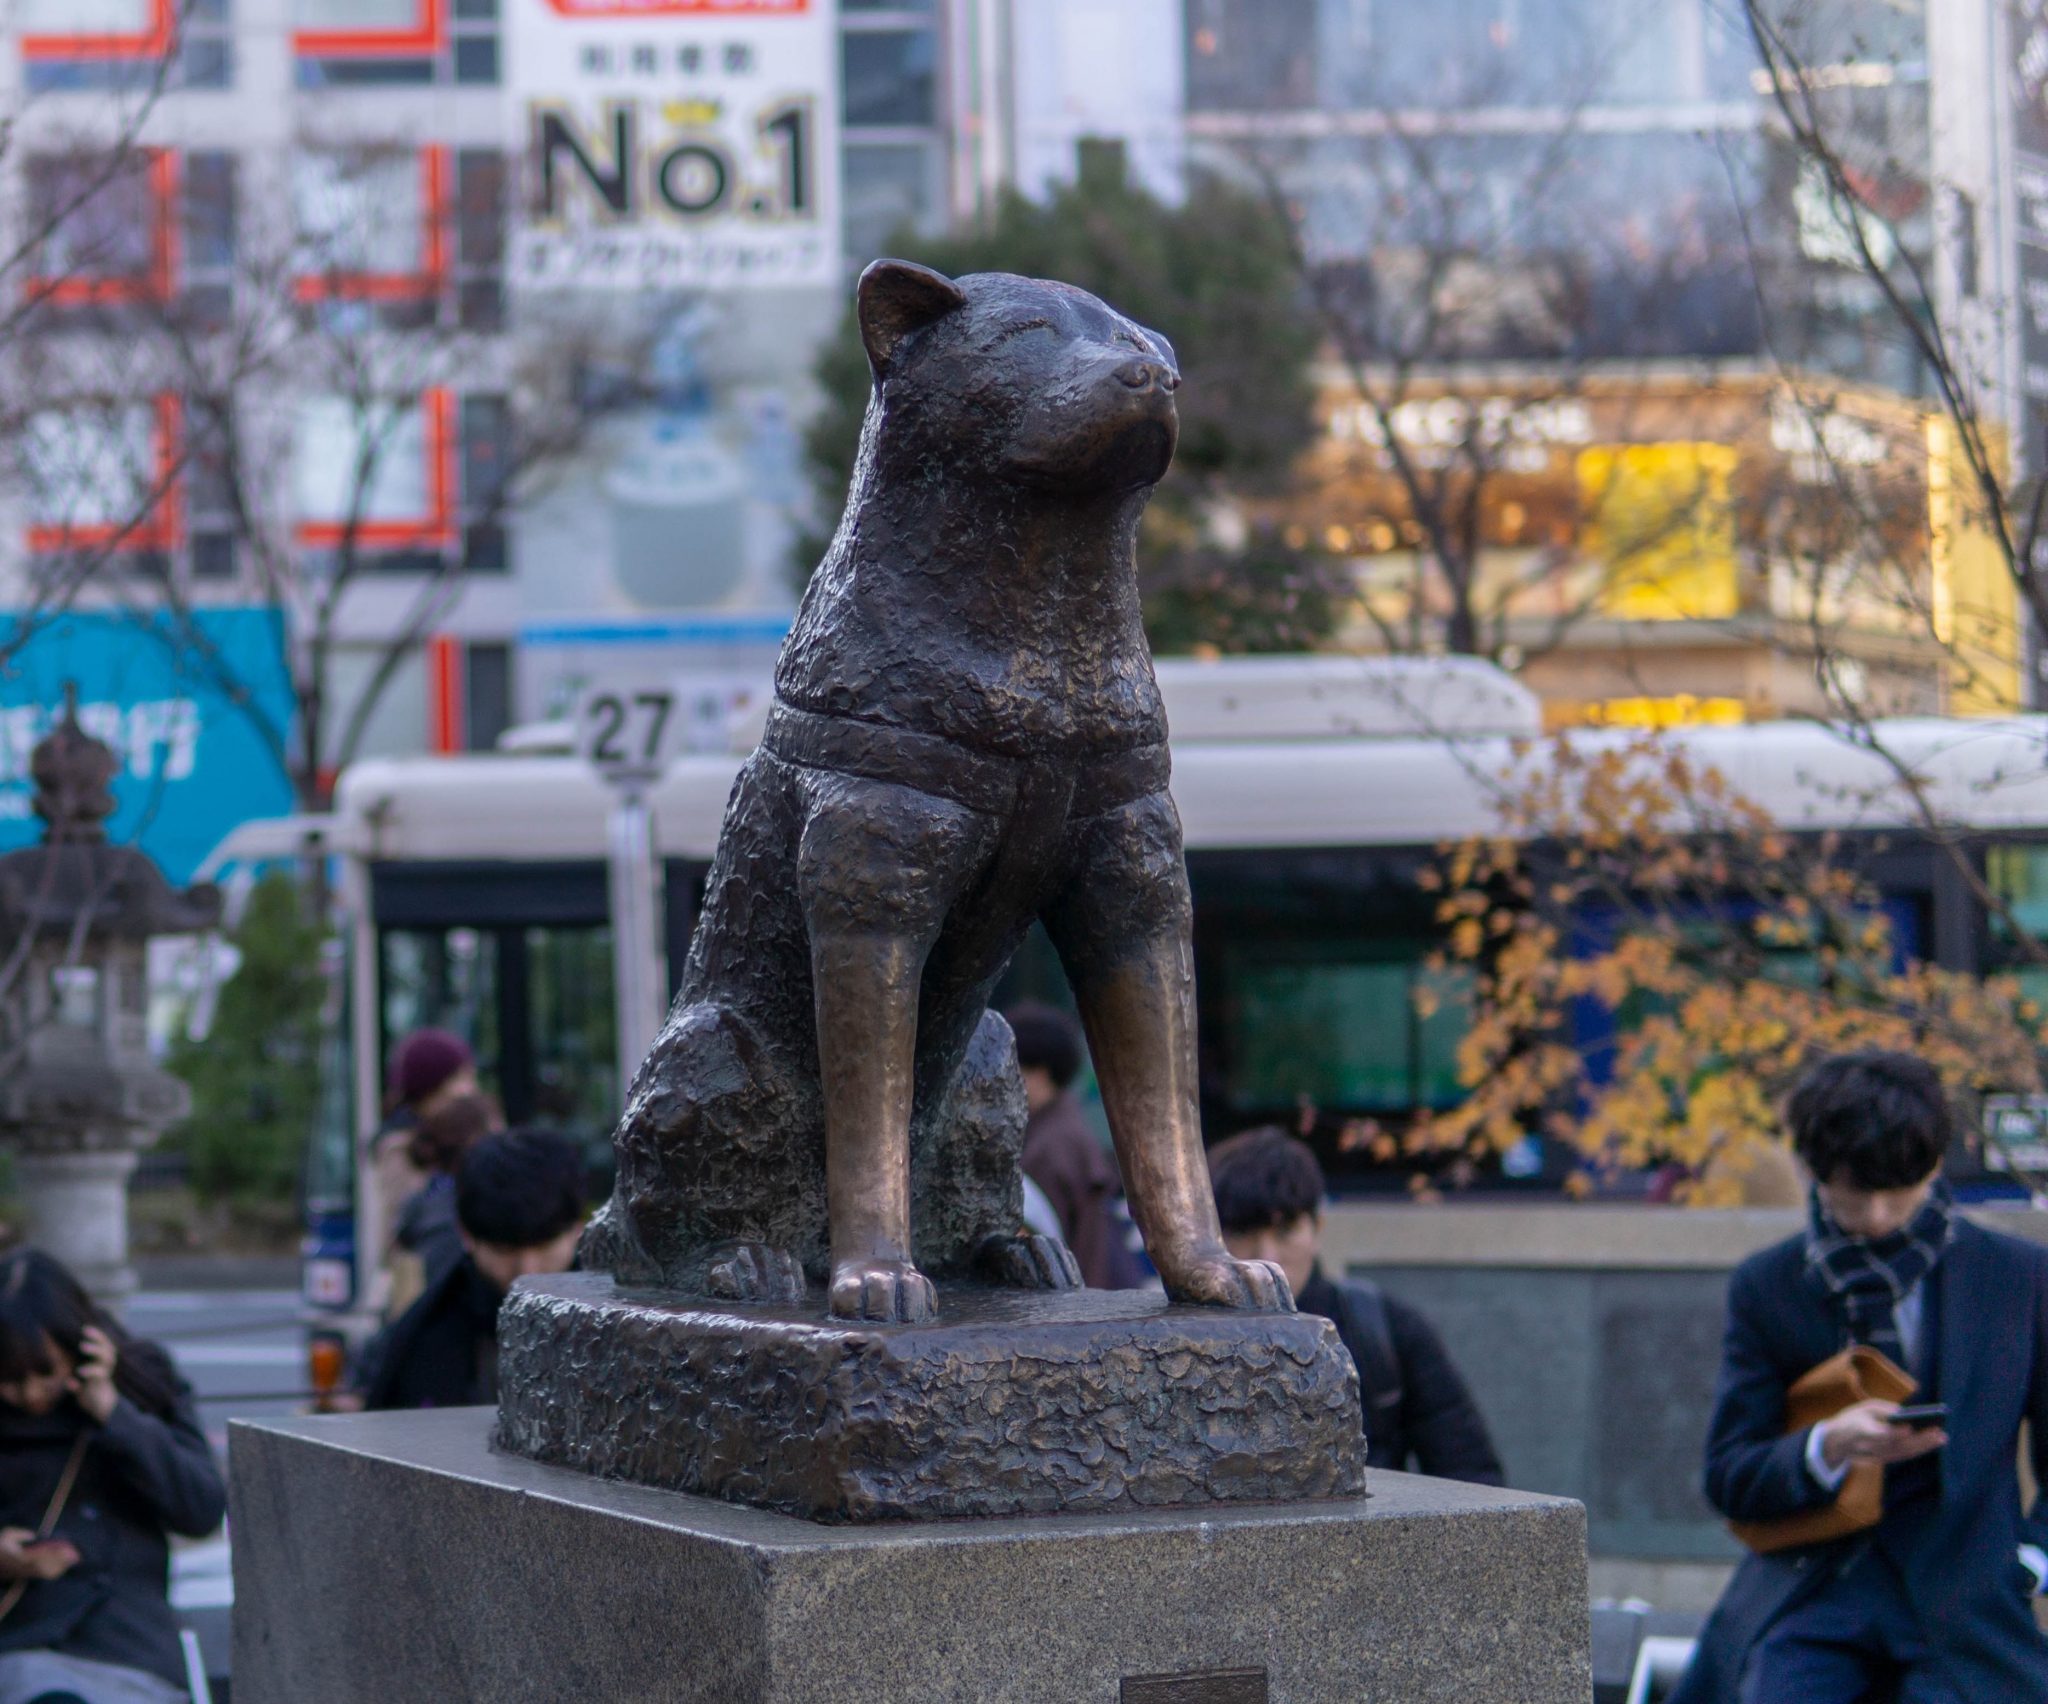 Hachiko statue in Shibuya area